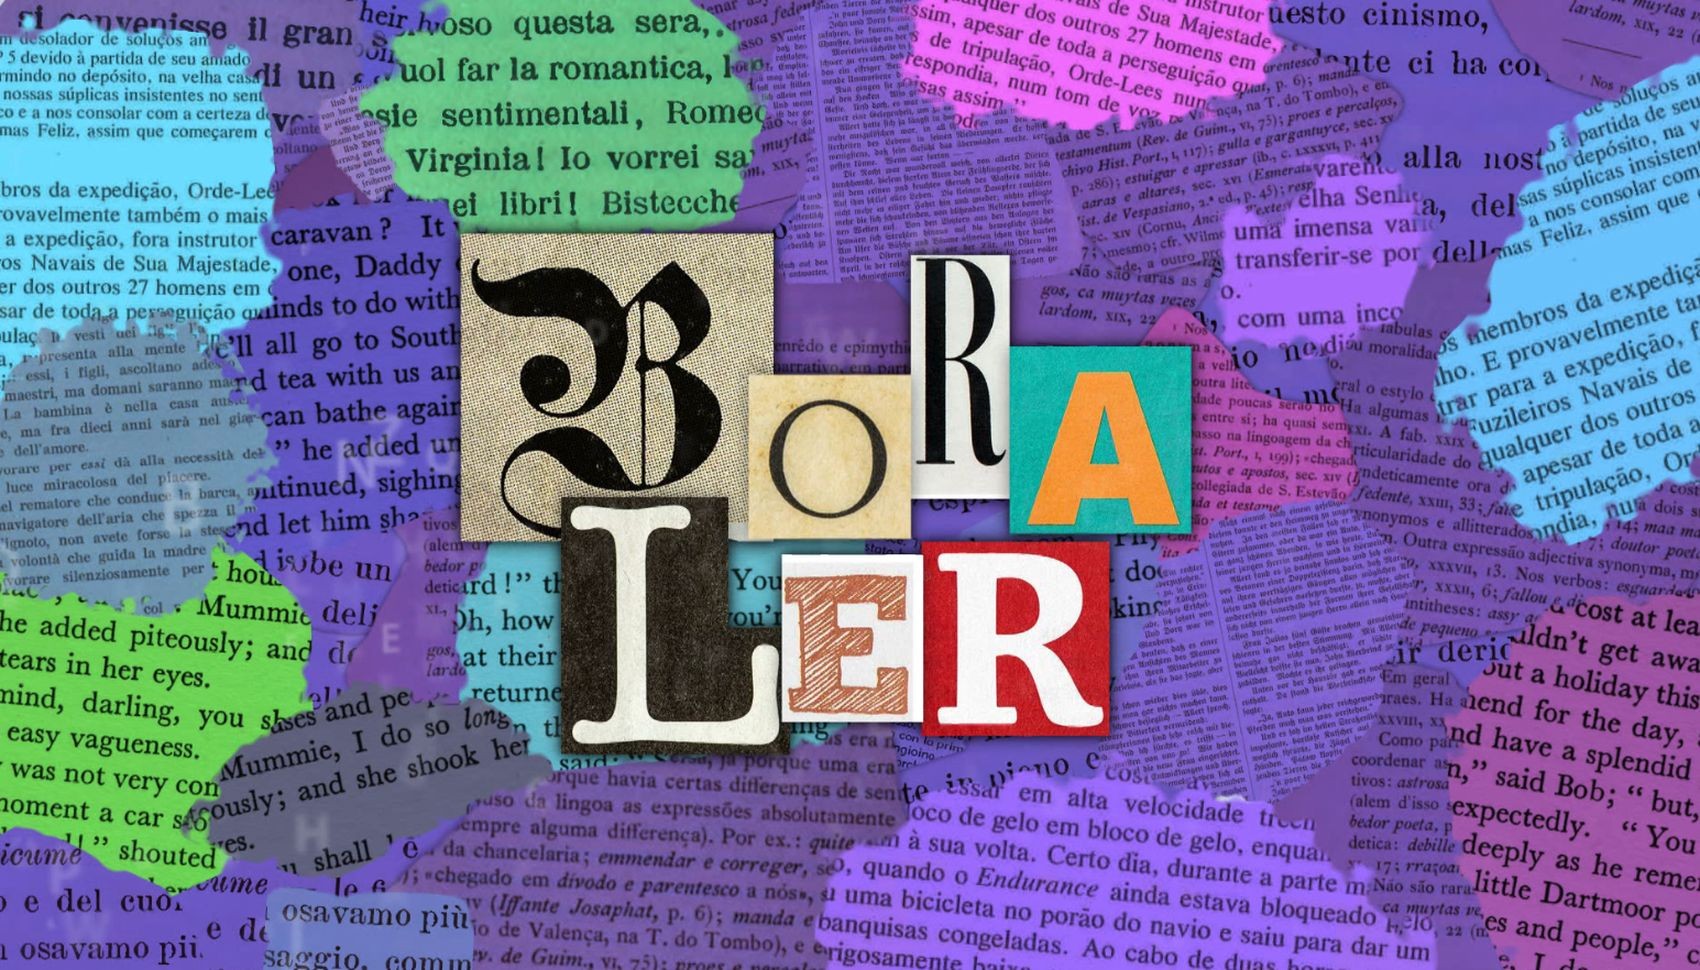 Bora Ler: quiz testa seus conhecimentos sobre a literatura sergipana e nacional